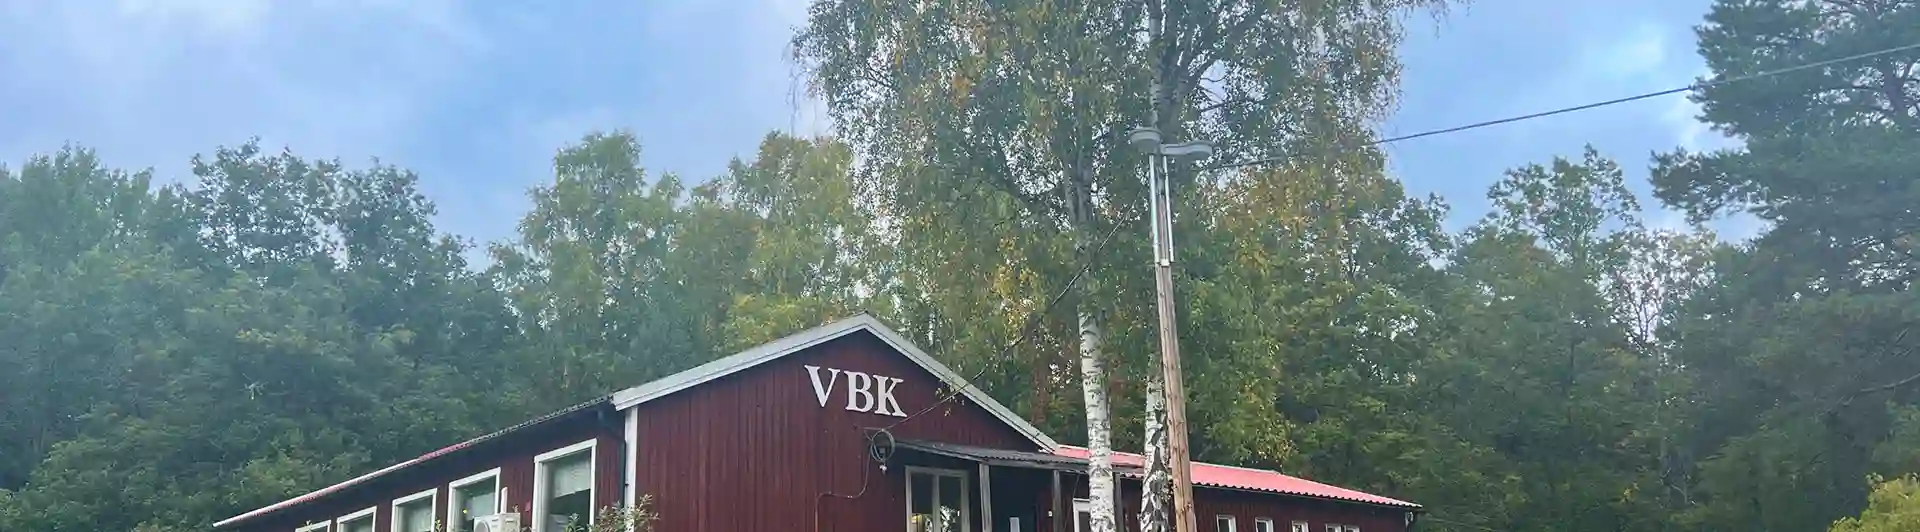 Röd klubbstuga i trä med texten VBK.